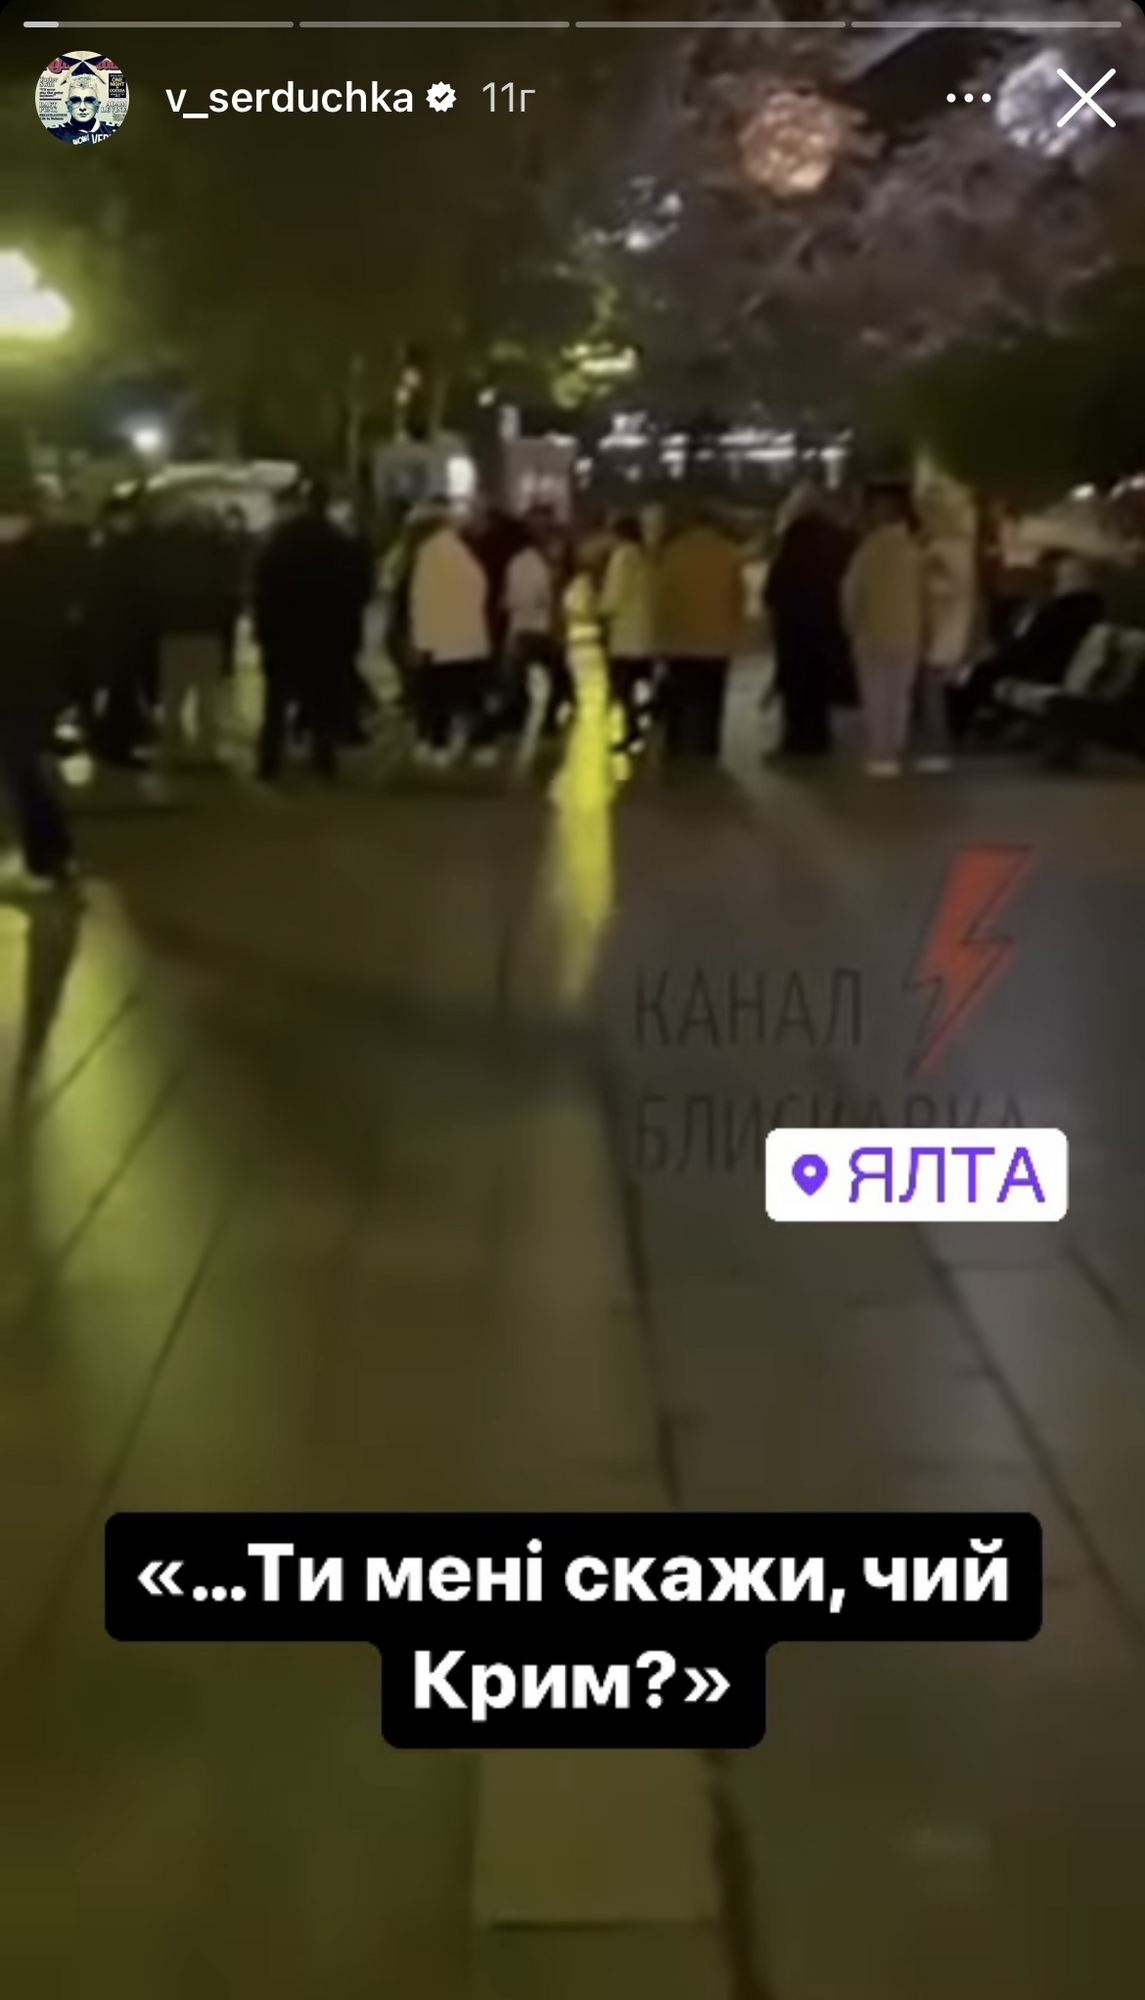 В Ялте люди зажигали под хит Сердючки "Ще не вмерла Україна, если мы гуляем так": оккупанты заставили извиниться "диджея"